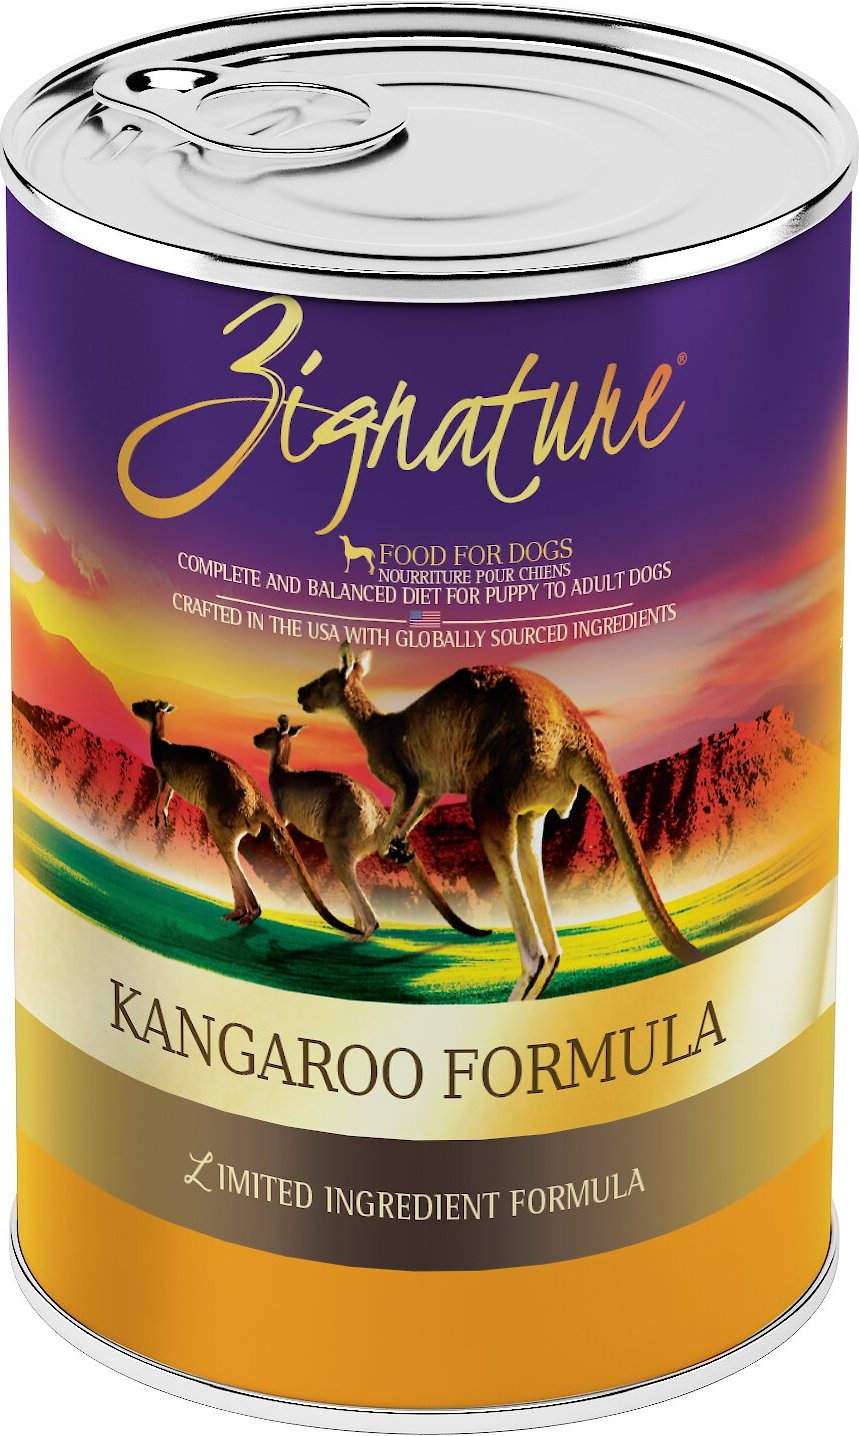 kangaroo diet for dogs